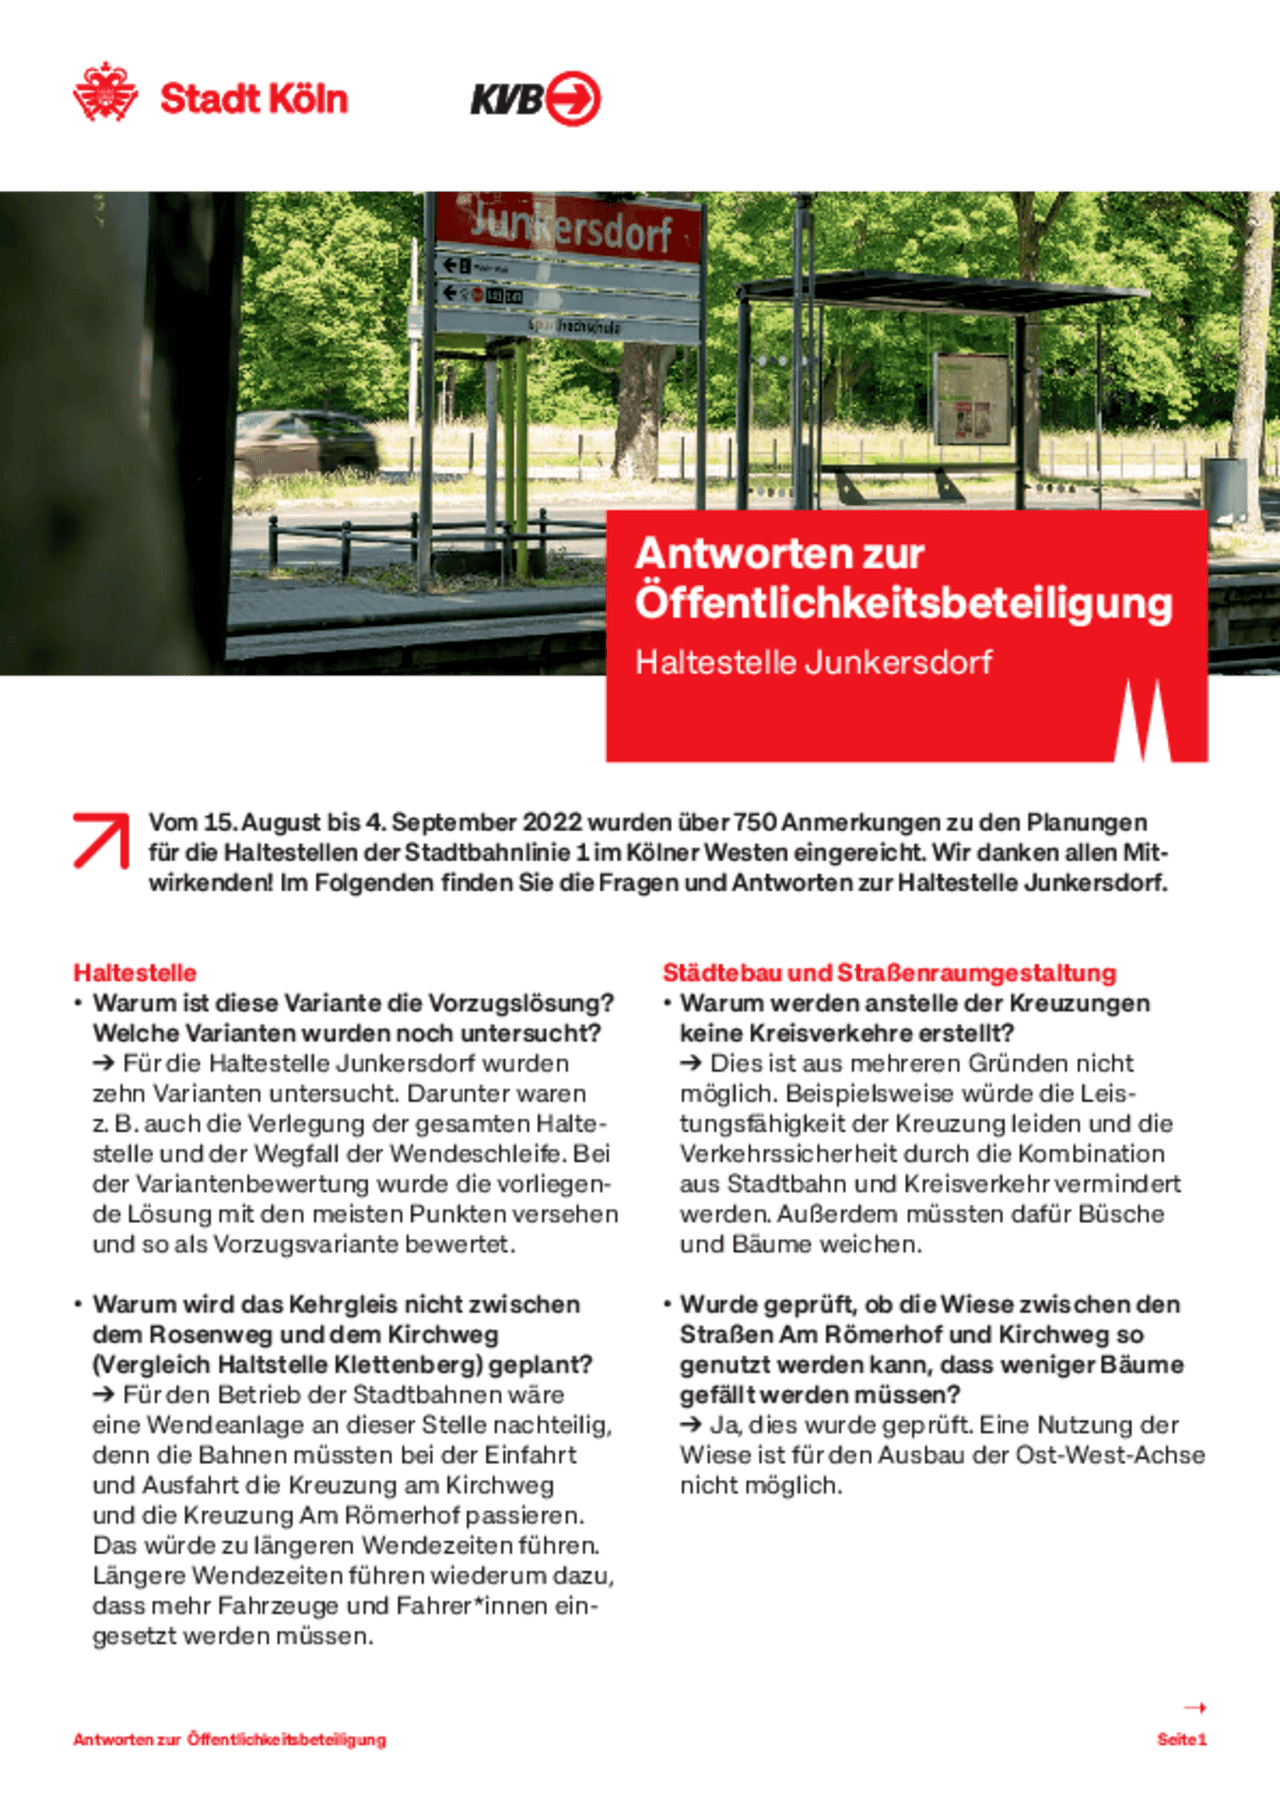 Bildvorschau des Infoblatts zur Haltestelle Junkersdorf